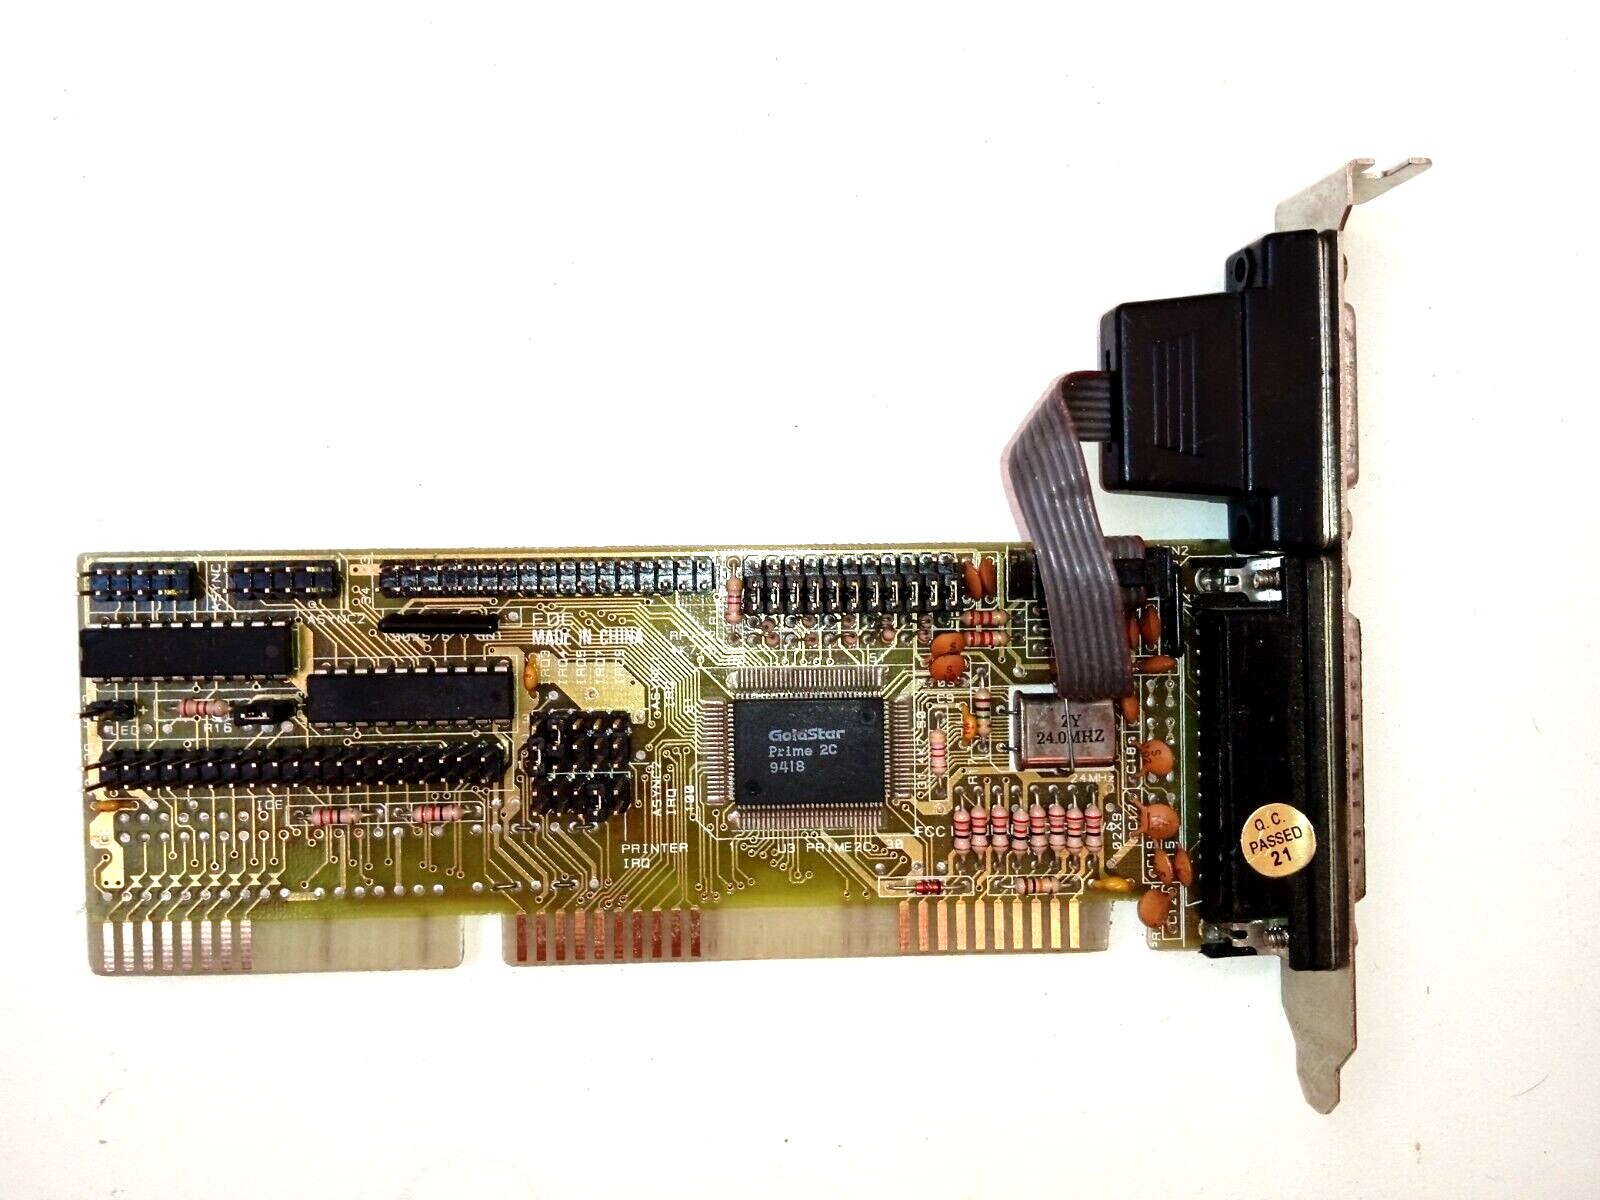 ISA IDE Controller I/O Card 16 bit EIDE - Goldstar Prime 2C Enhanced